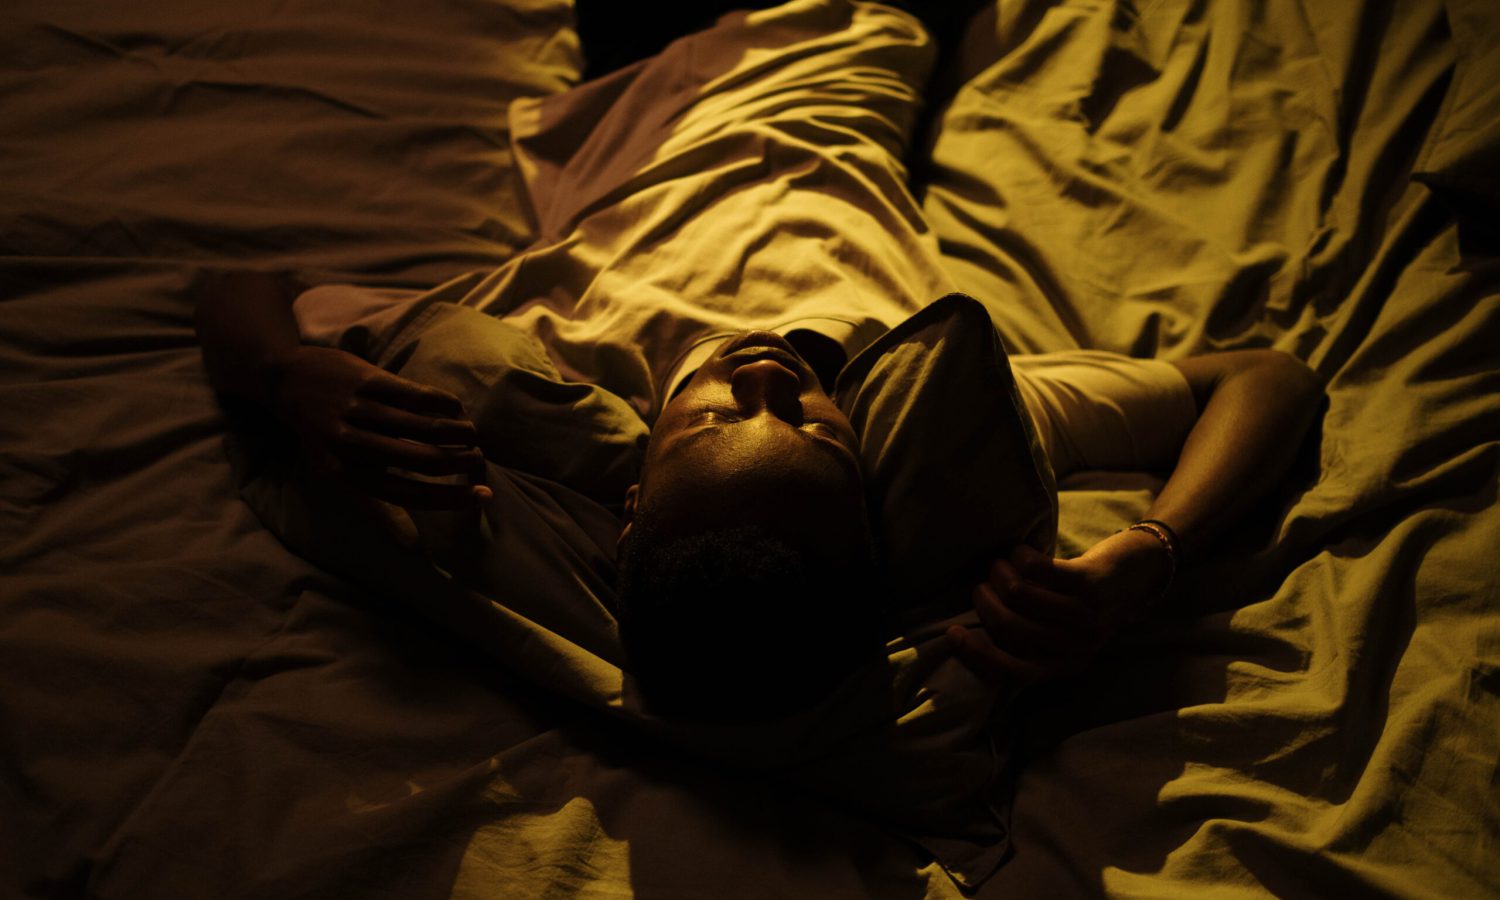 "Ansiedad y preocupación: Chico negro tumbado en una cama blanca durante la noche"